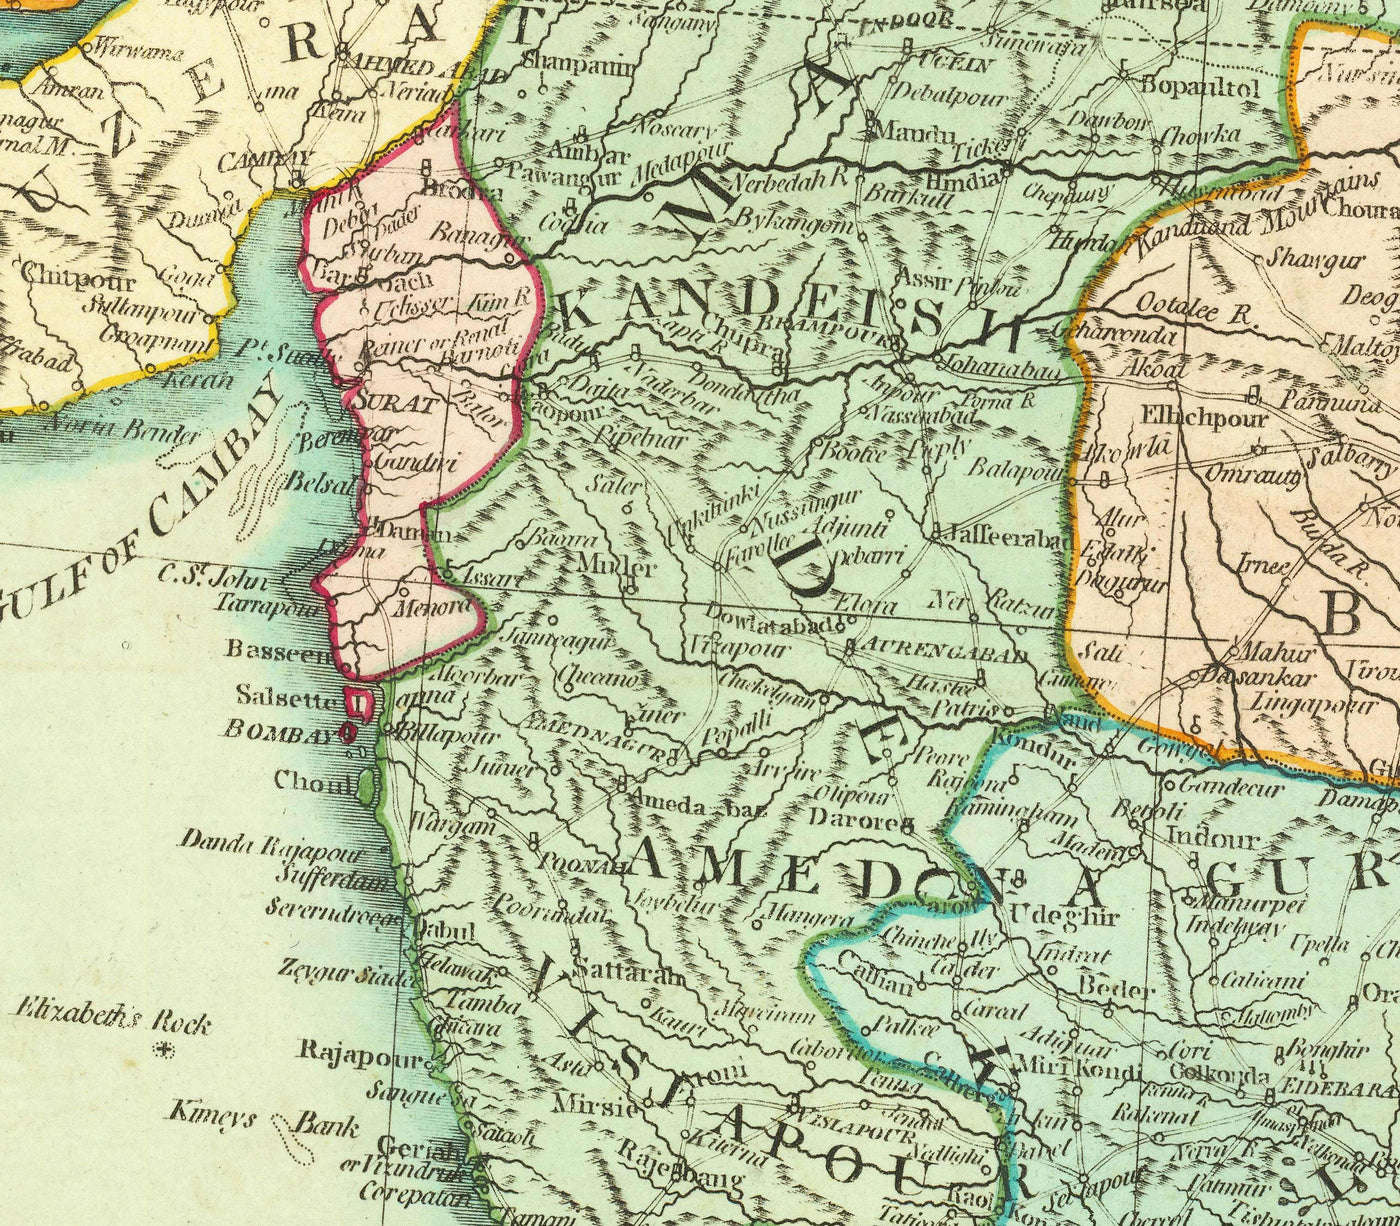 Alte Karte der Ostindien, 1794 - Indien, Hindustan, China, Vietnam, Thailand, Siam, Burma, Malaysia, Vietnam, Pegu